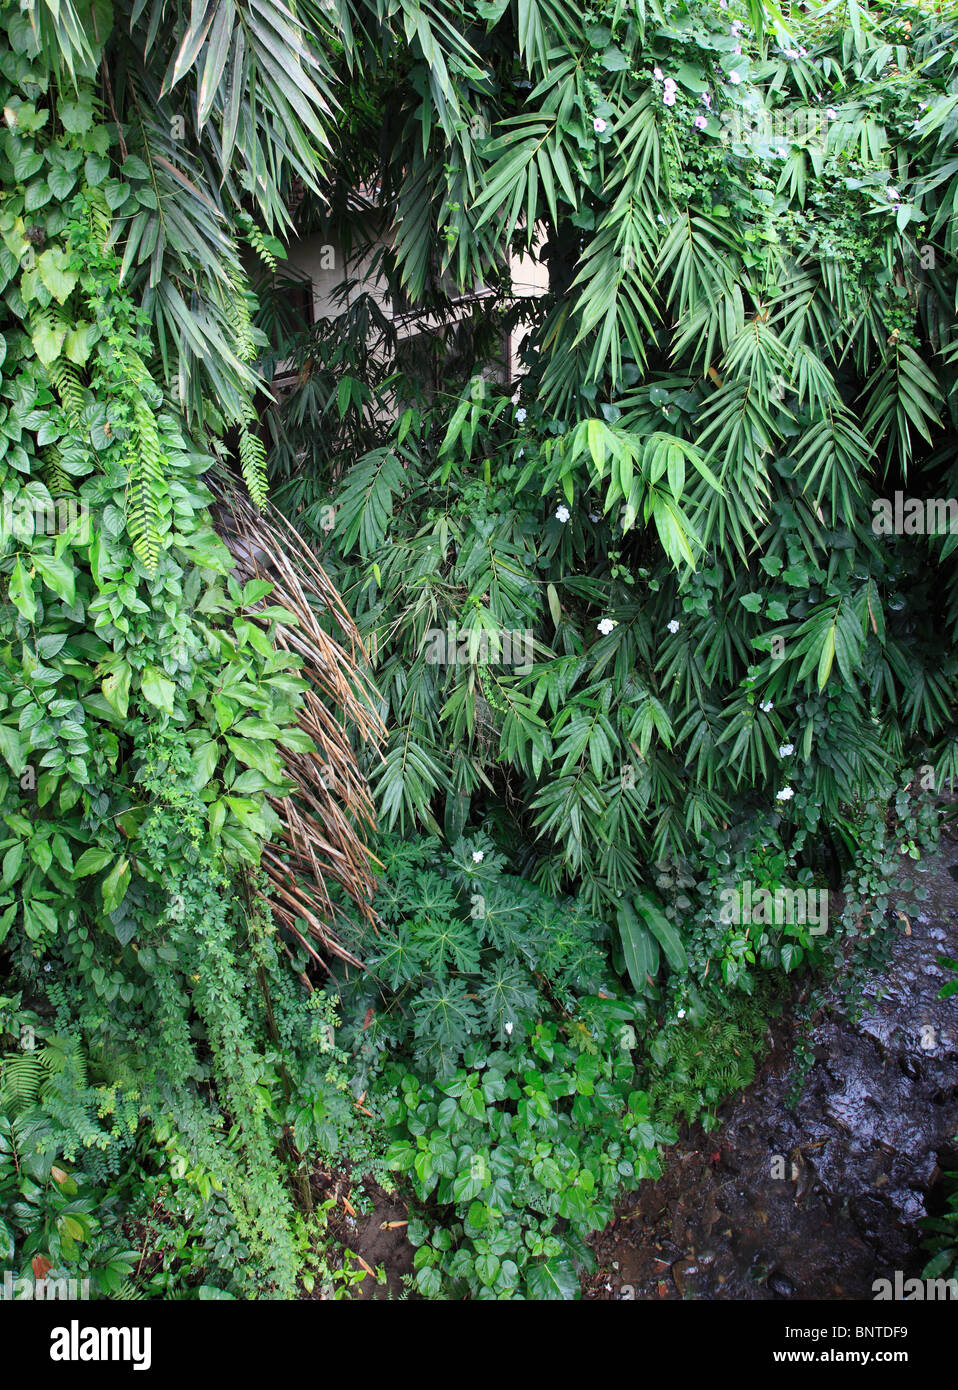 Indonesia, Bali, Ubud, lush tropical vegetation, Stock Photo